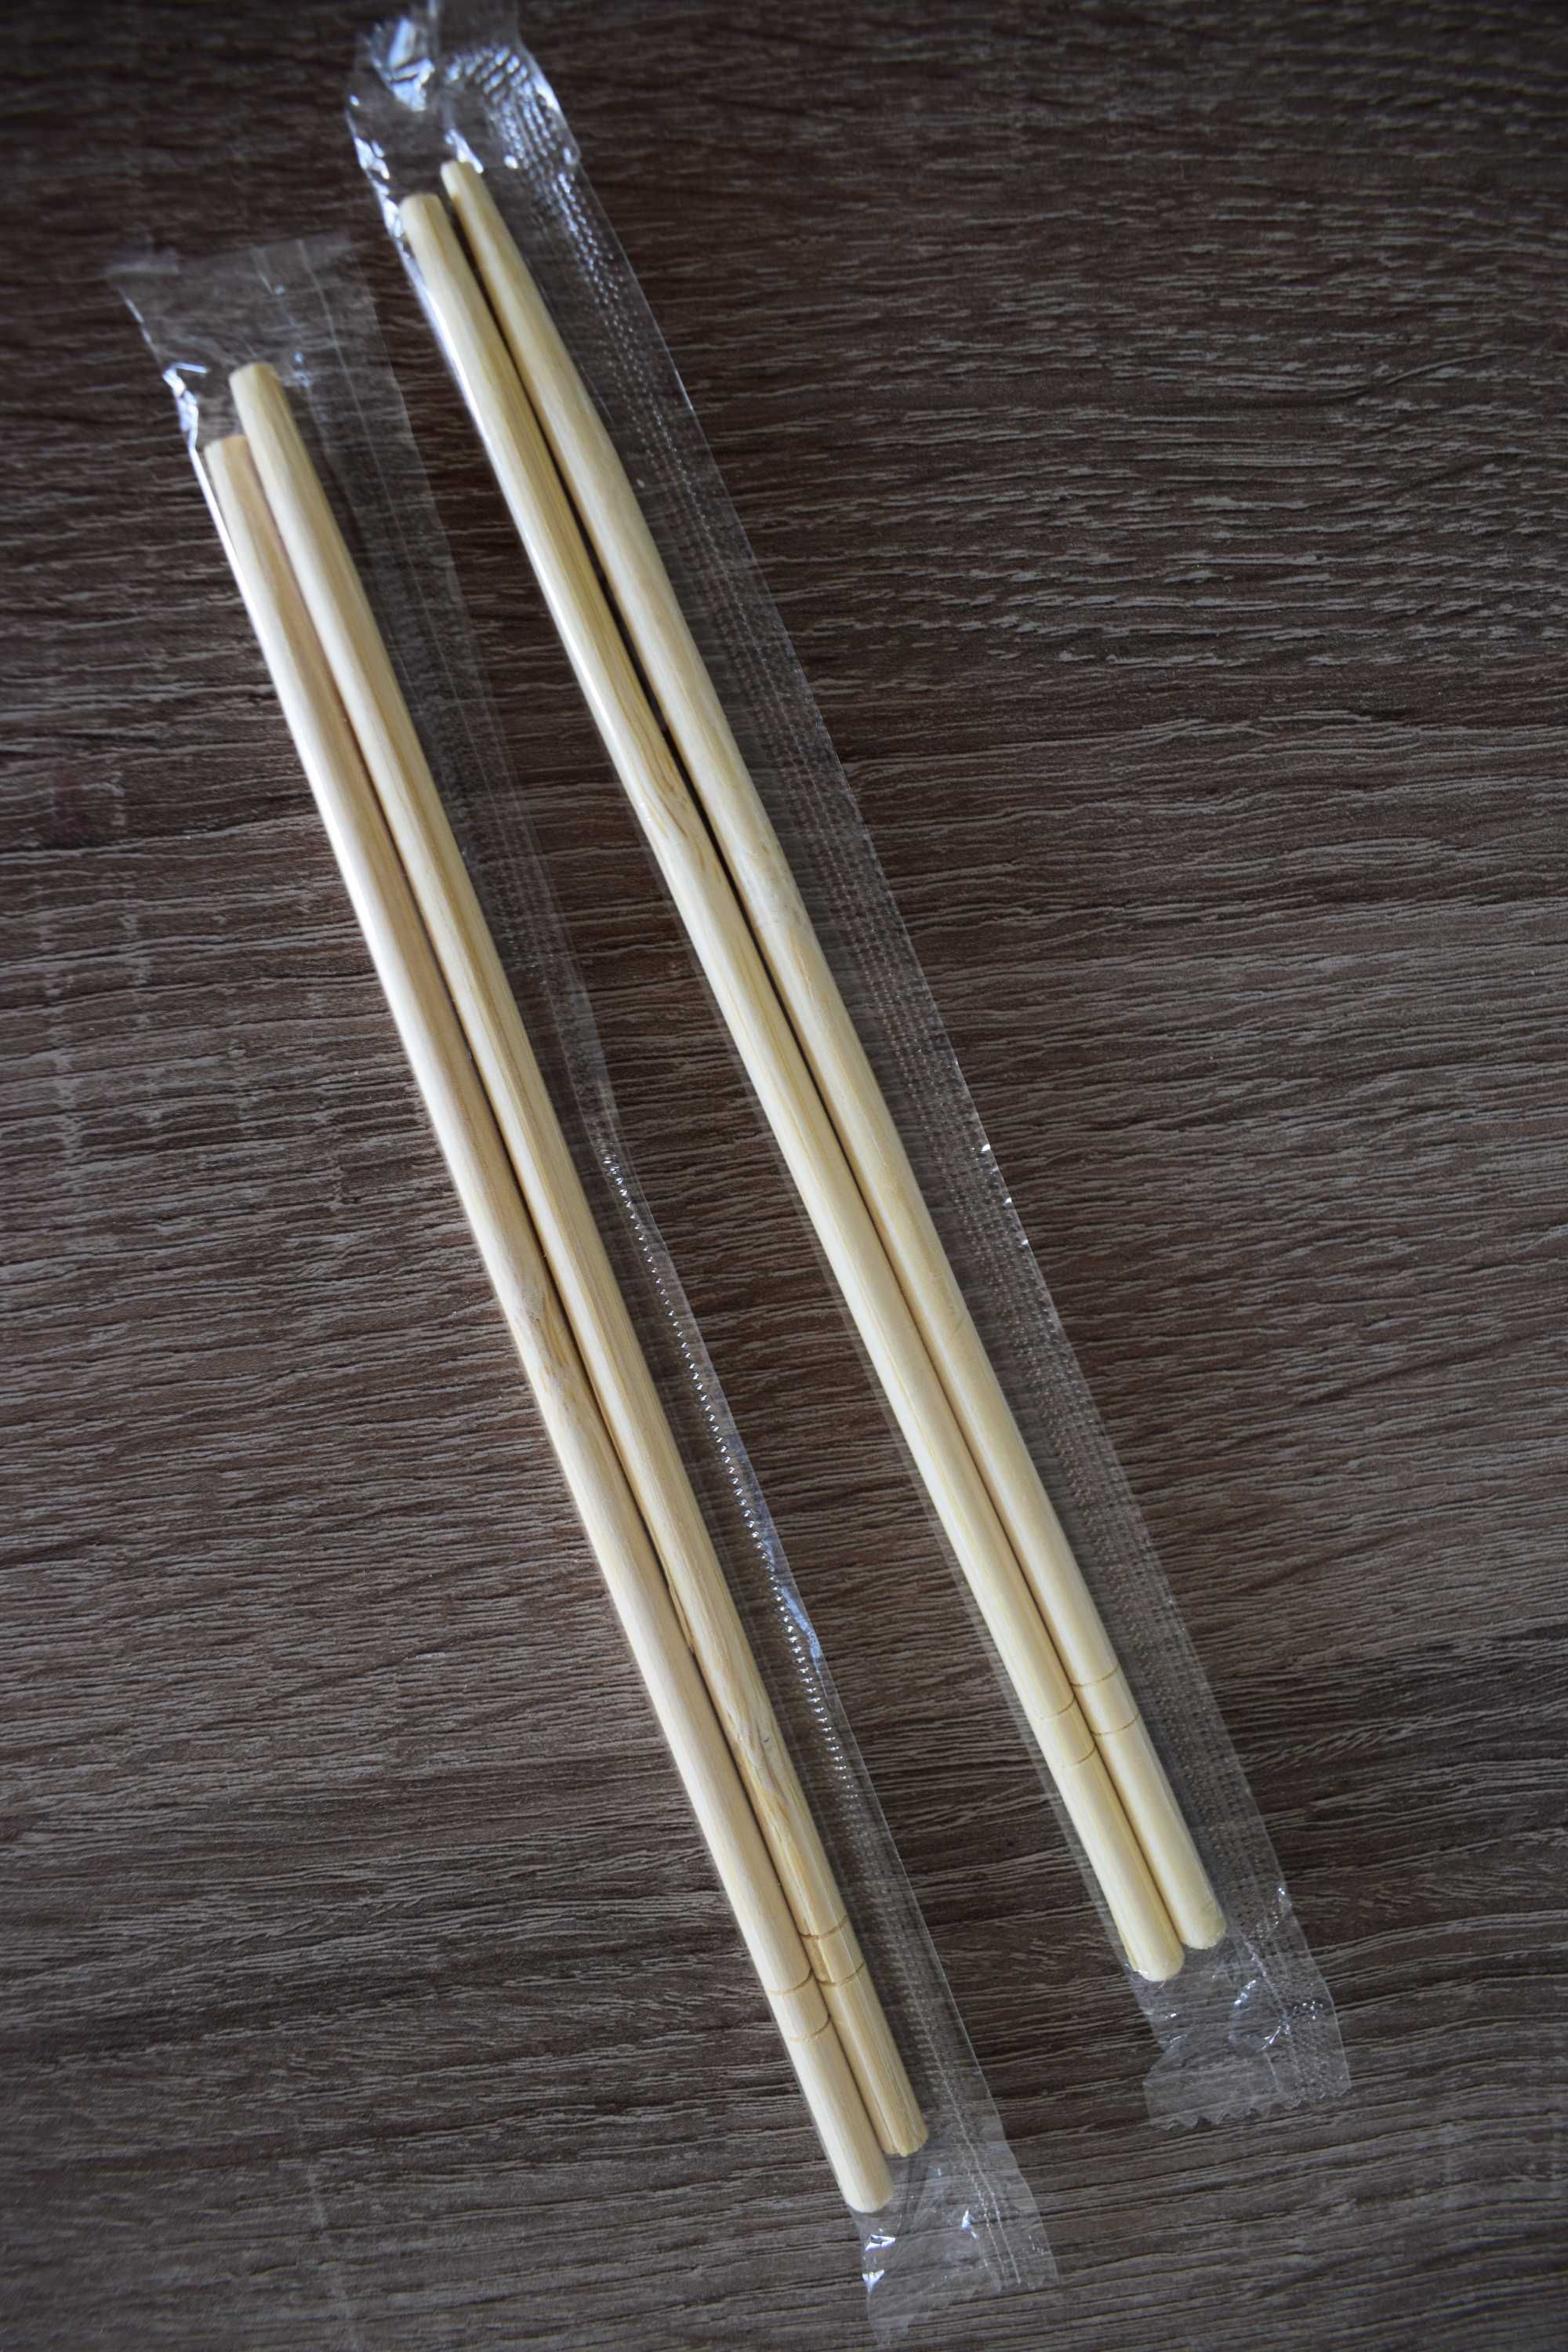 Pałeczki bambusowe  - 40 sztuk w niskiej cenie .